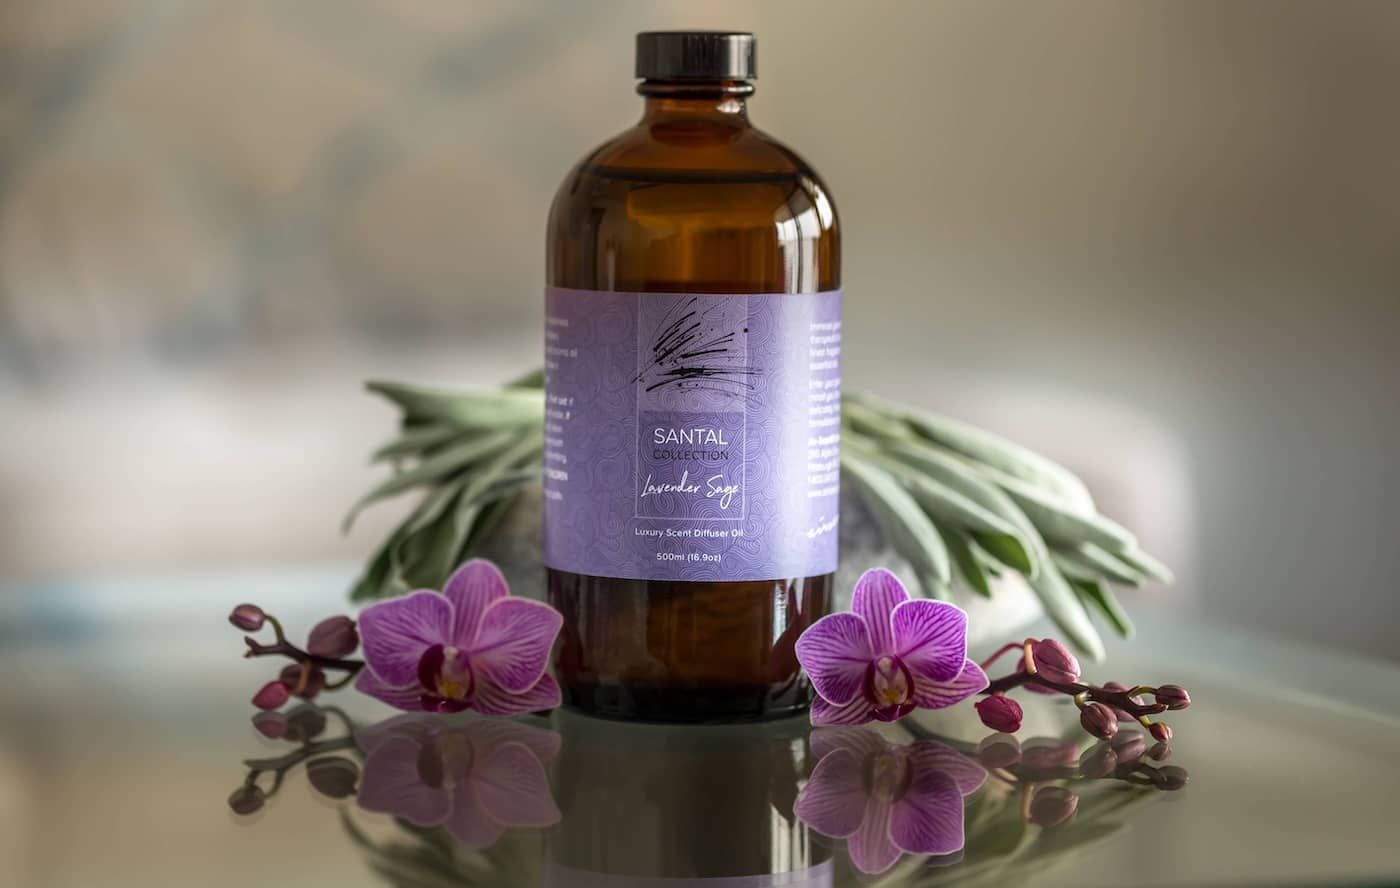 Santal Lavender Sage Sandalwood diffuser oil